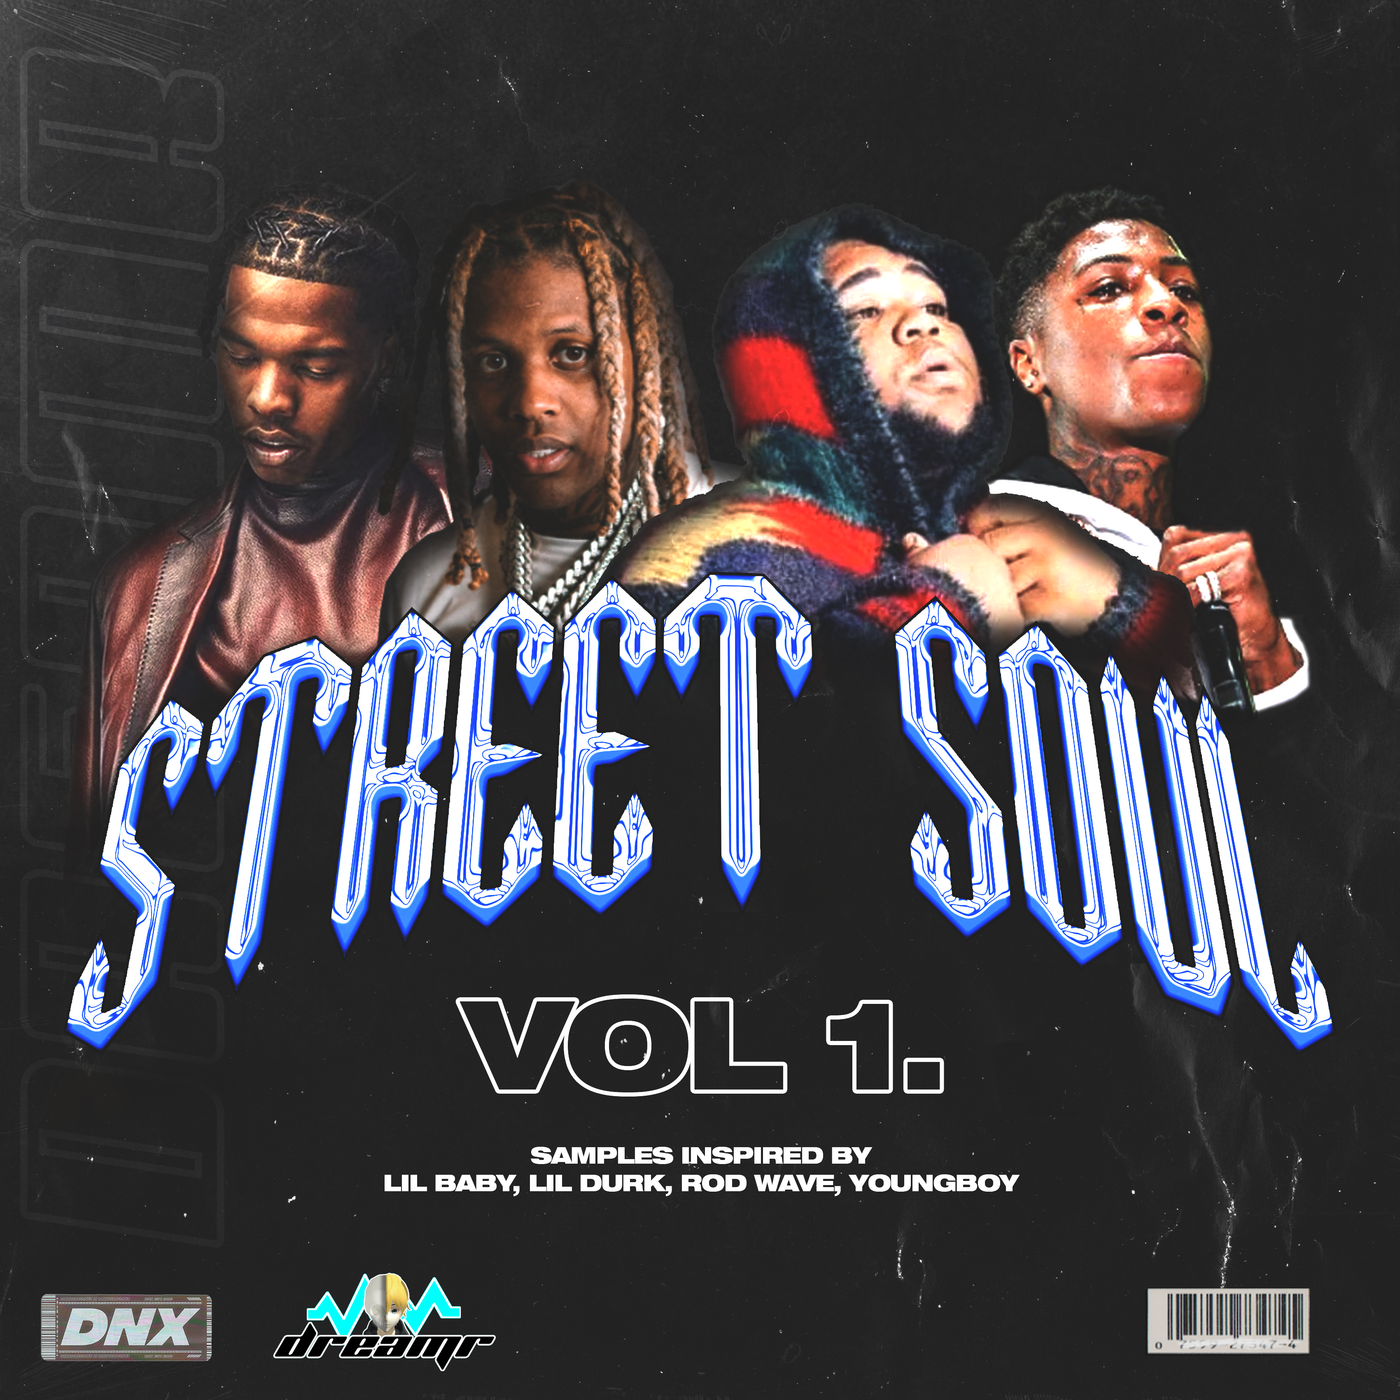 Street Soul Vol. 1 - Sample Pack - DNX - Do Not Cross